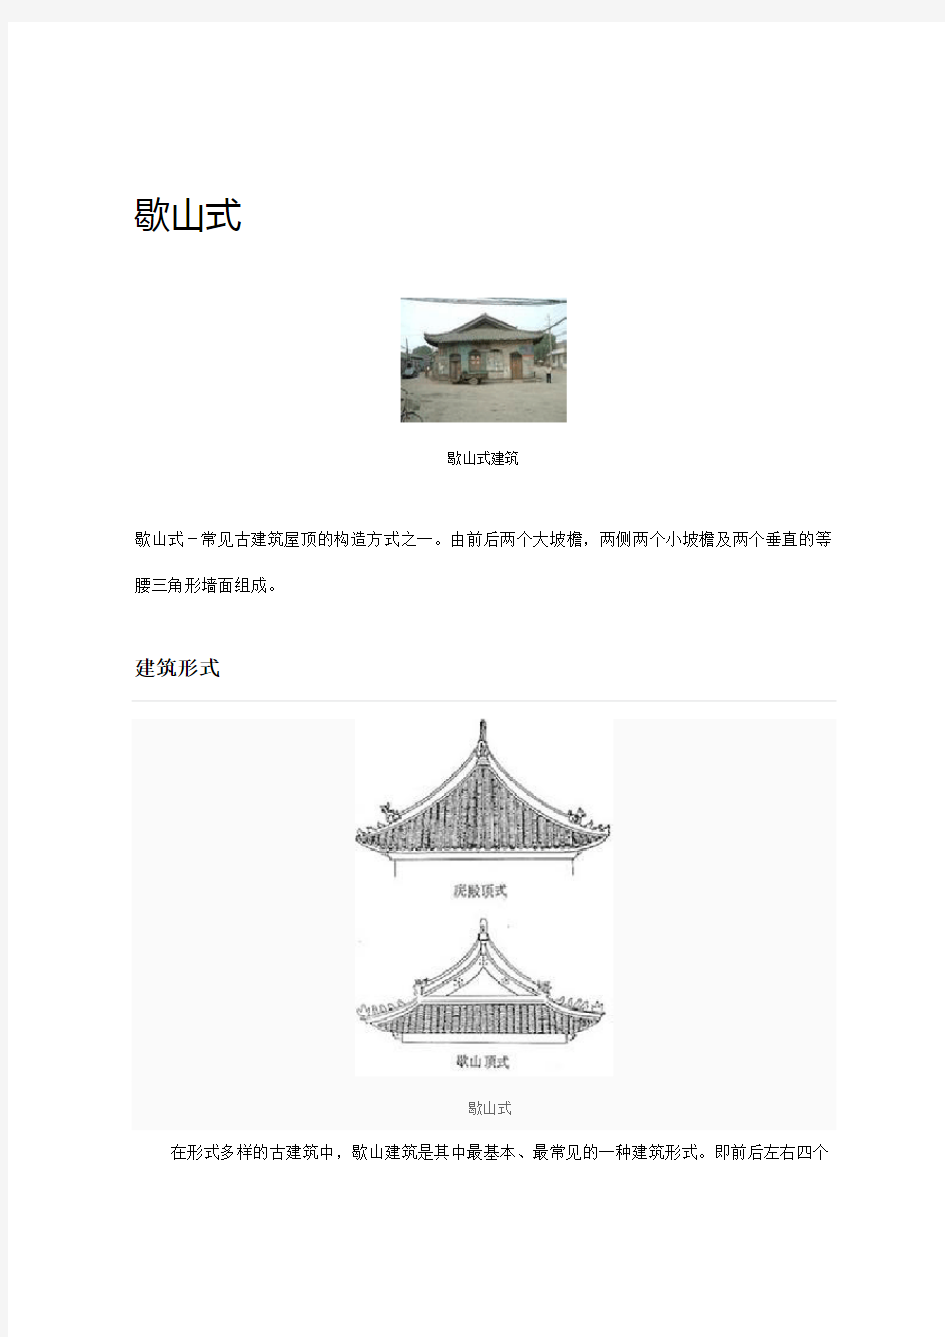 汉代建筑-歇山式